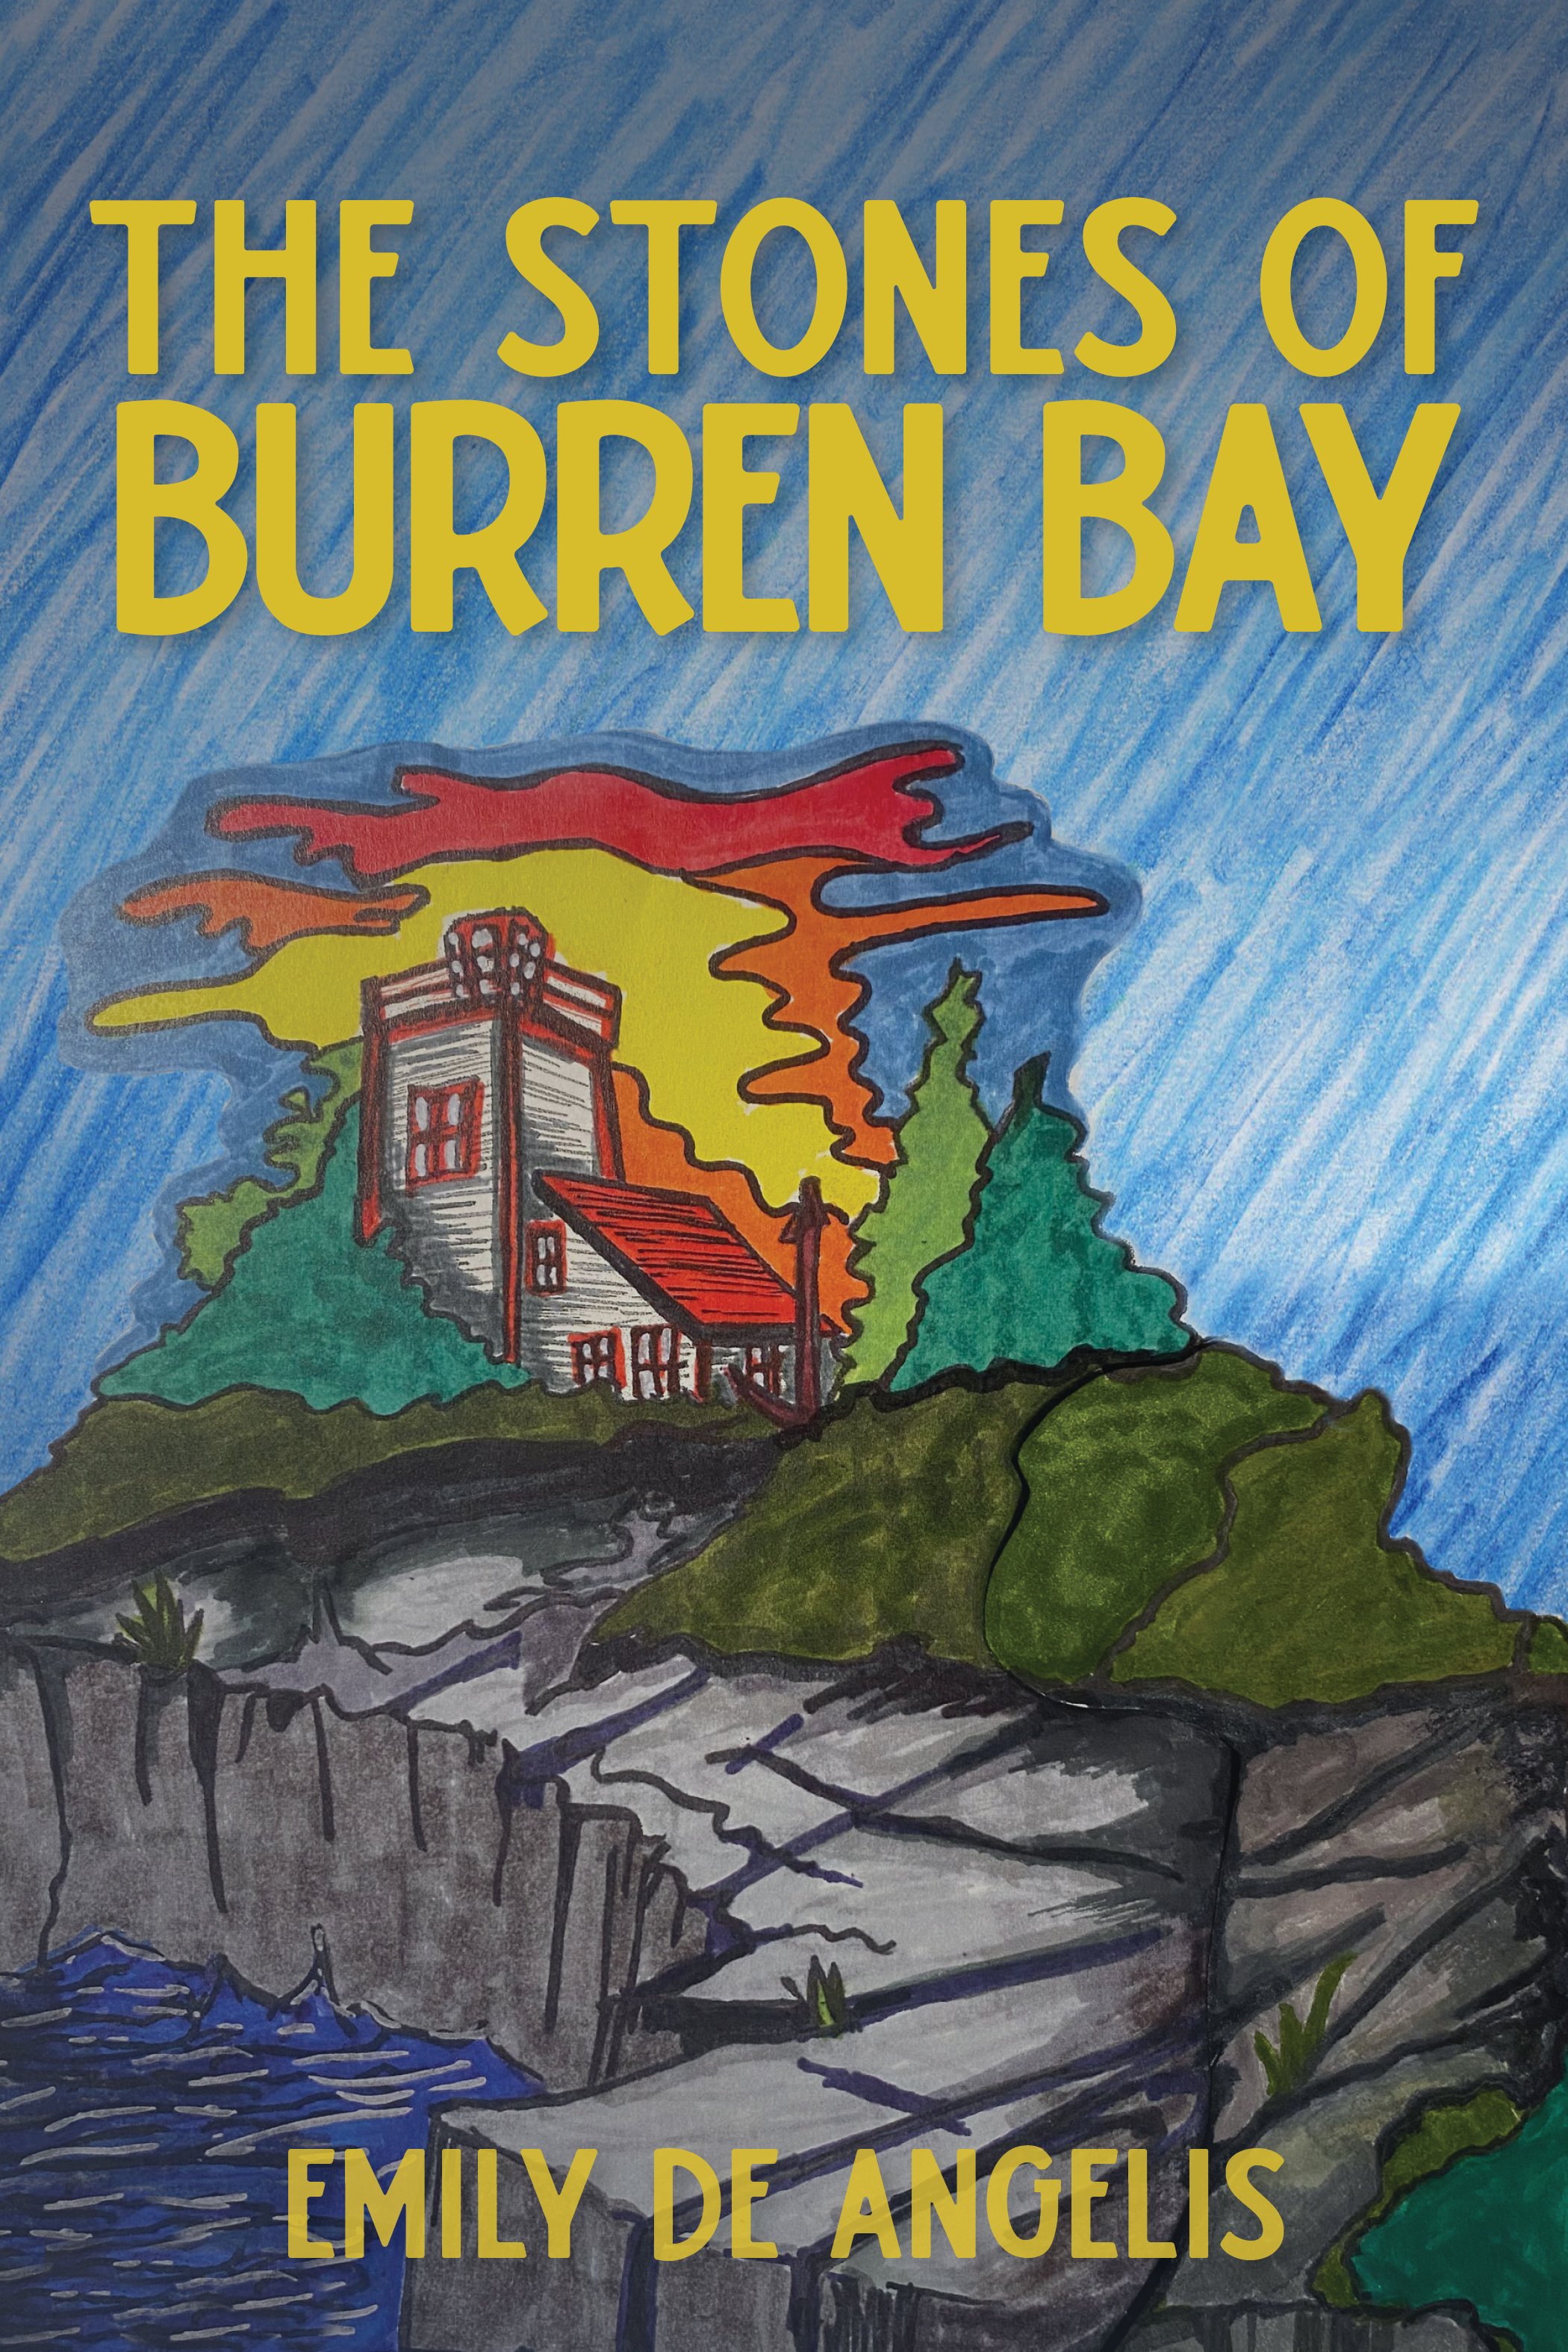 The Stones of Burren Bay by Emily De Angelis